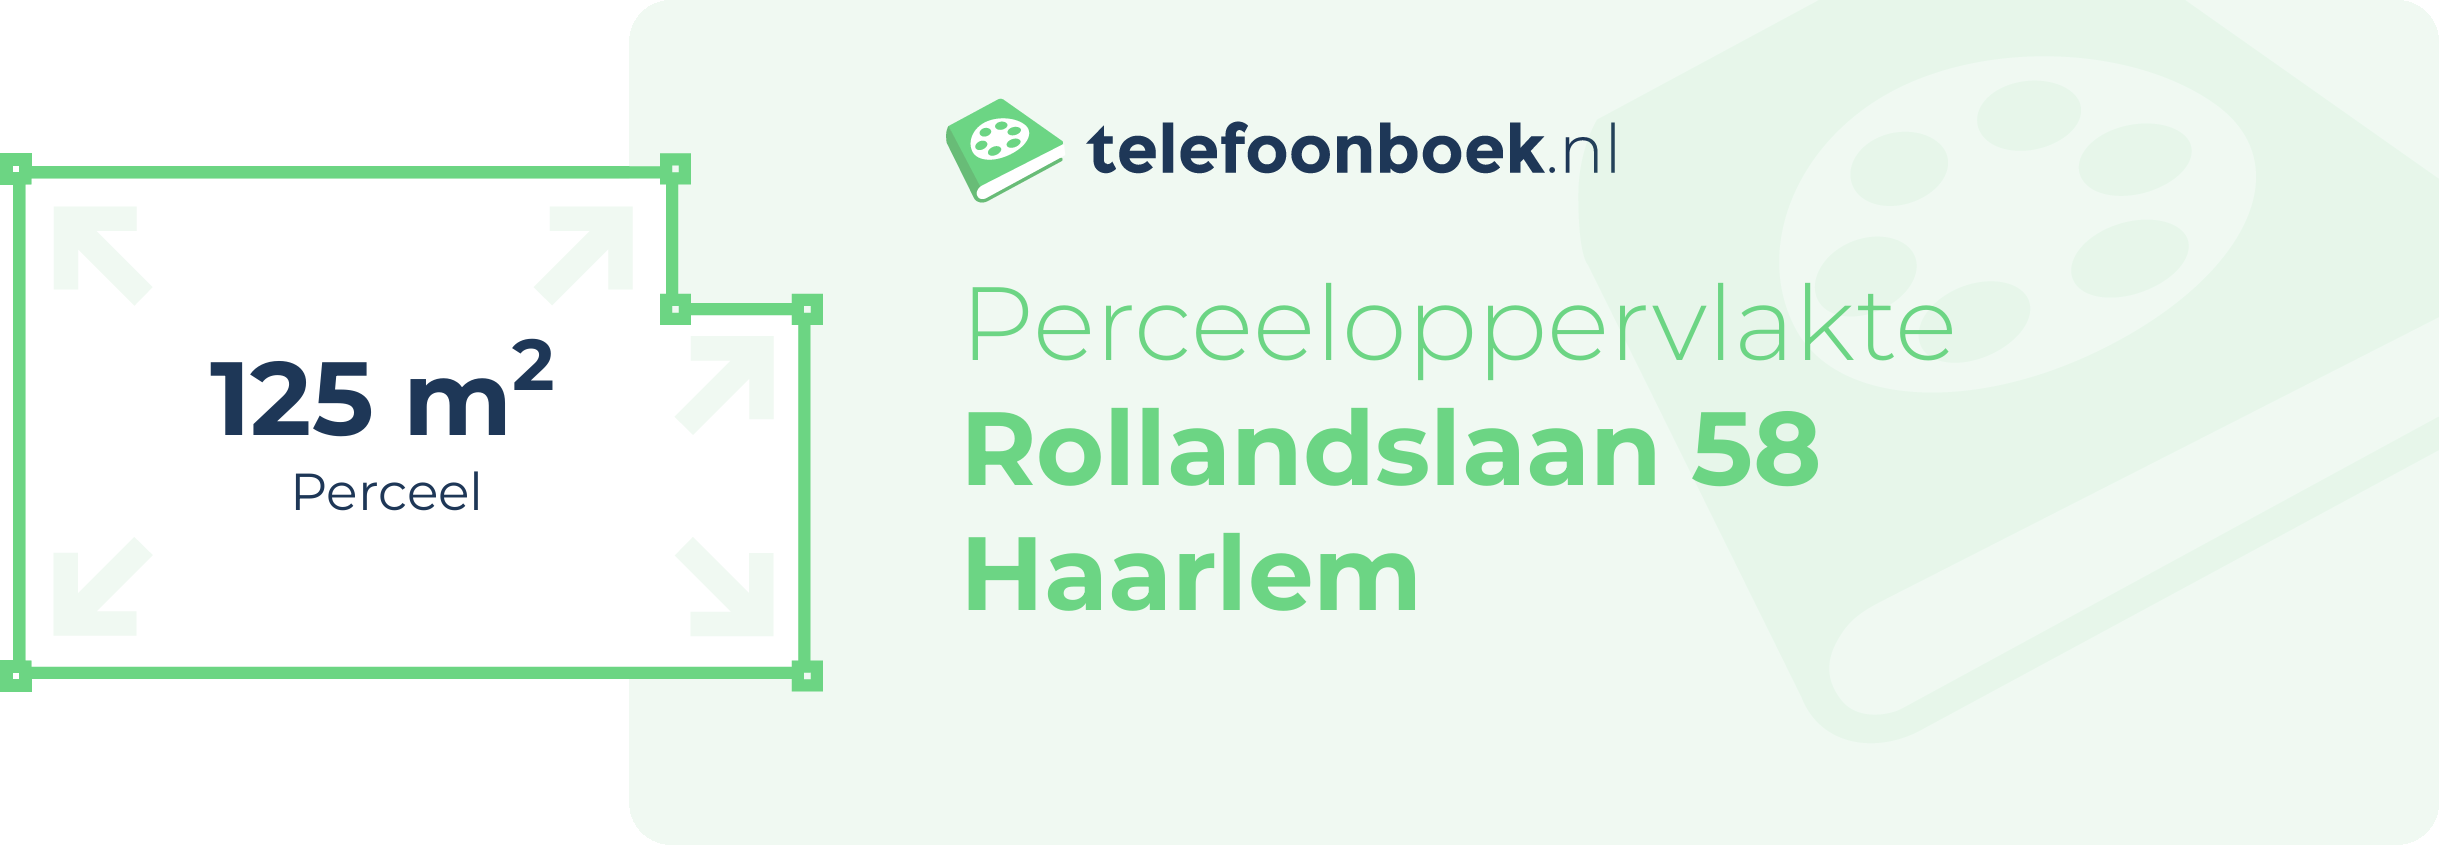 Perceeloppervlakte Rollandslaan 58 Haarlem